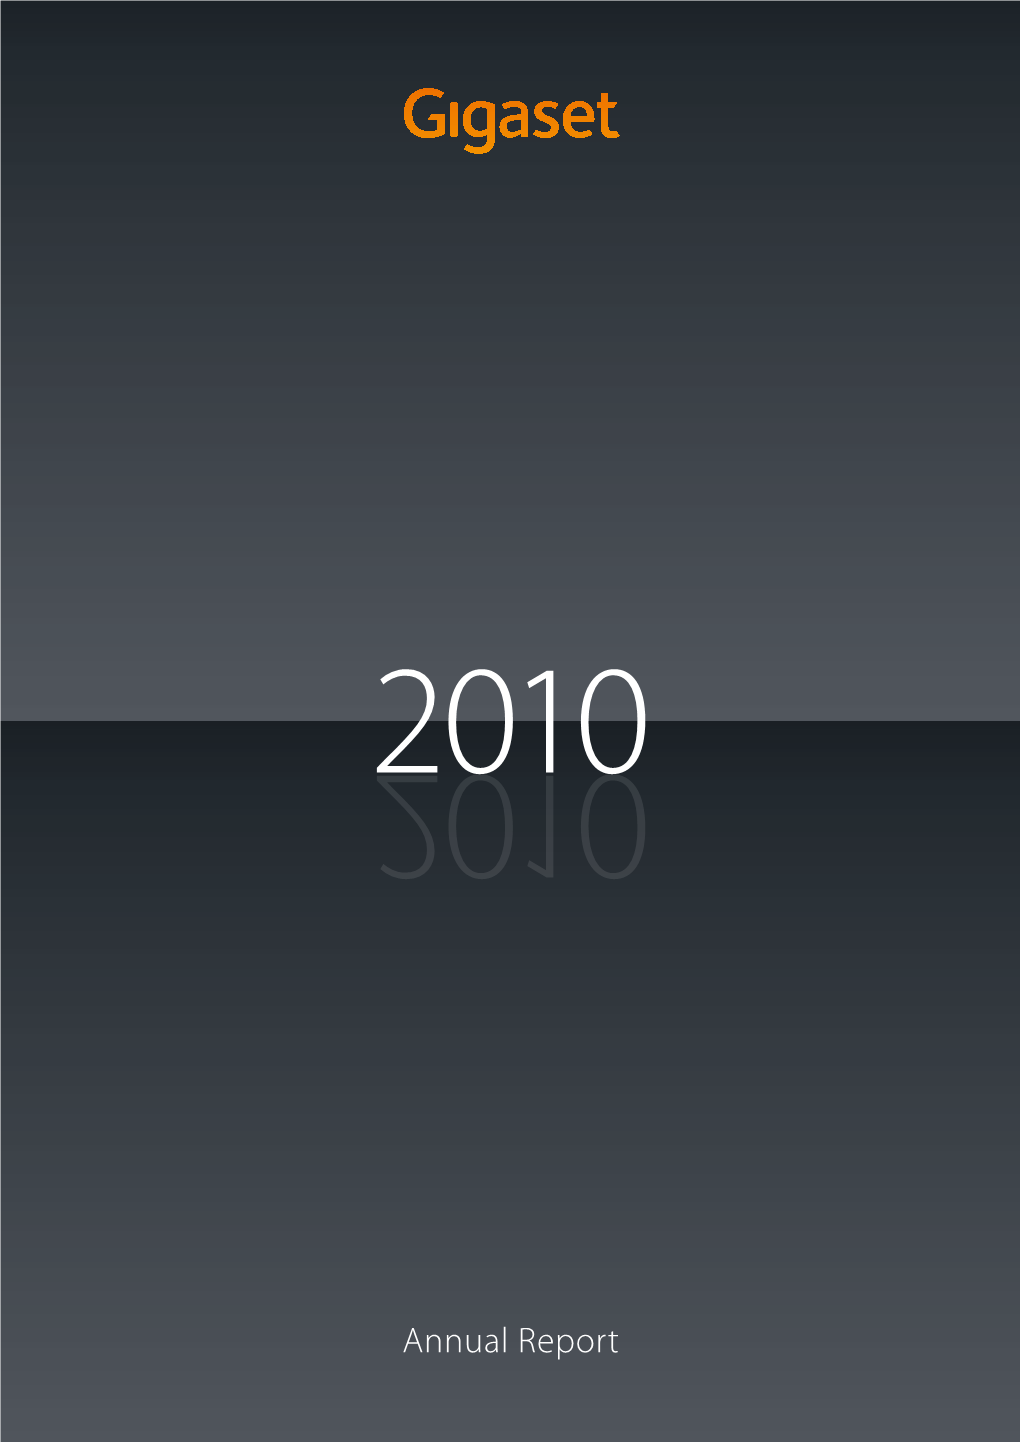 Annual Report Milestones in 2010